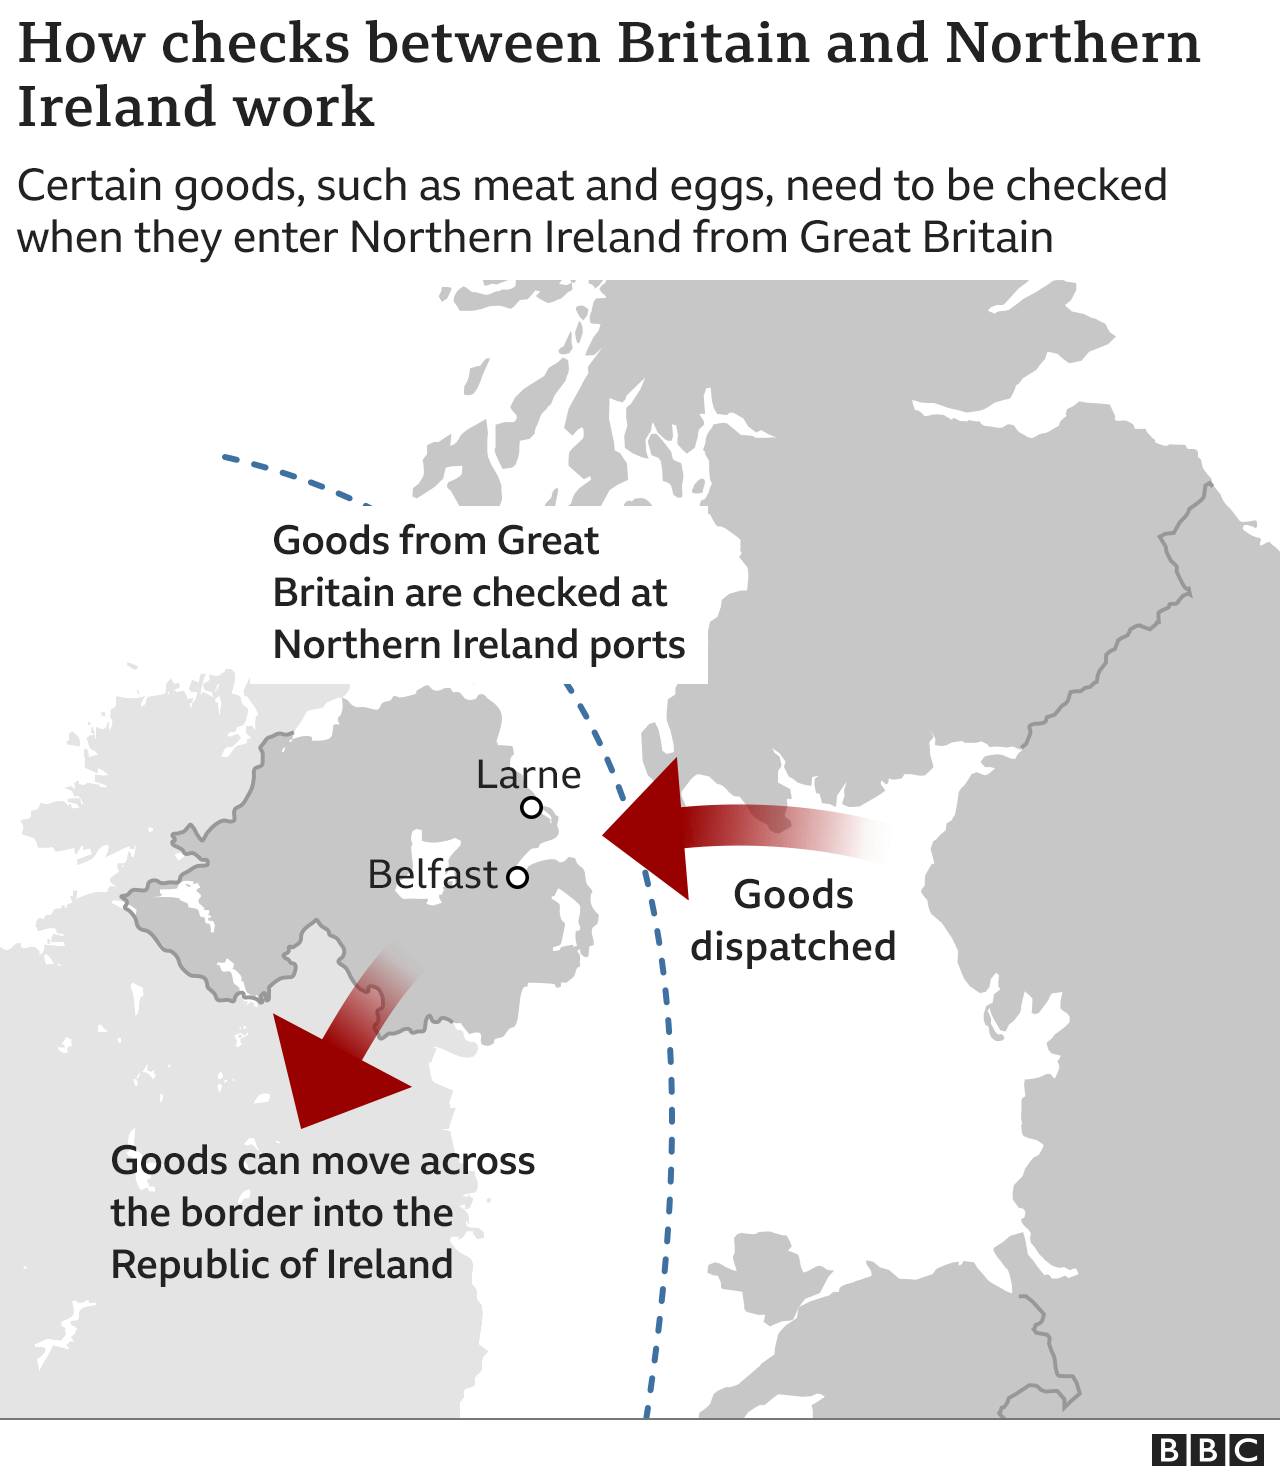 Mappa del Regno Unito che mostra come le merci viaggiano dalla GB verso la NI e poi verso la Repubblica d'Irlanda.